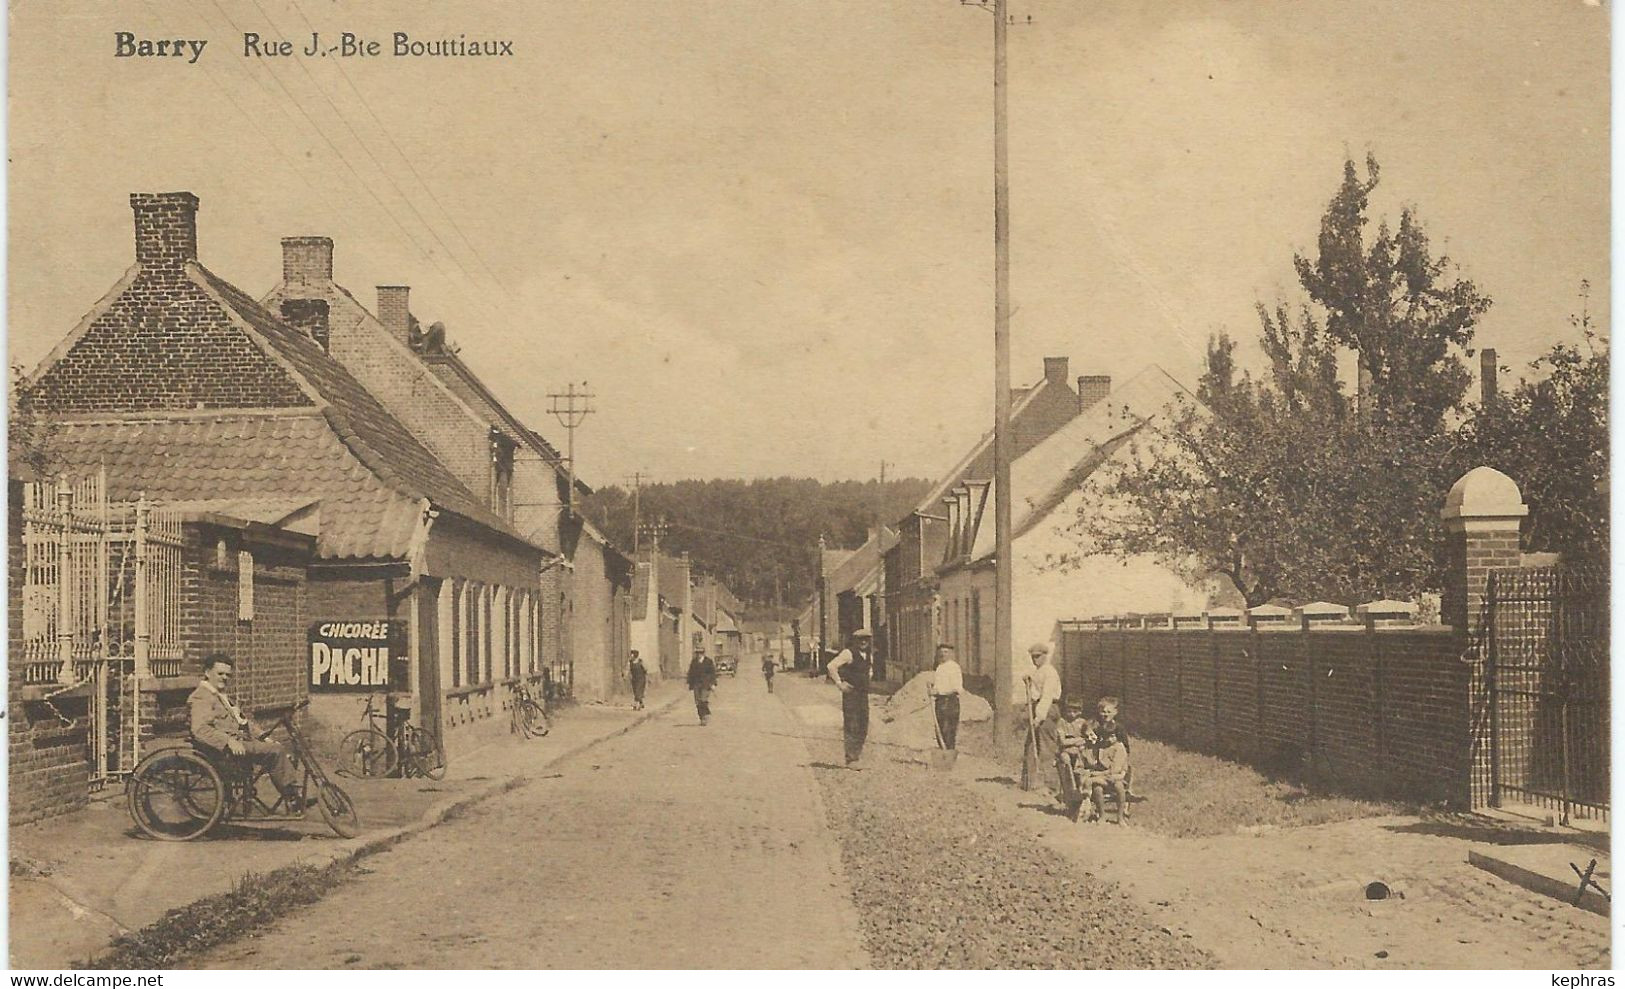 BARRY : Rue J.-Bte Bouttiaux - Cachet De La Poste 1938 - Tournai